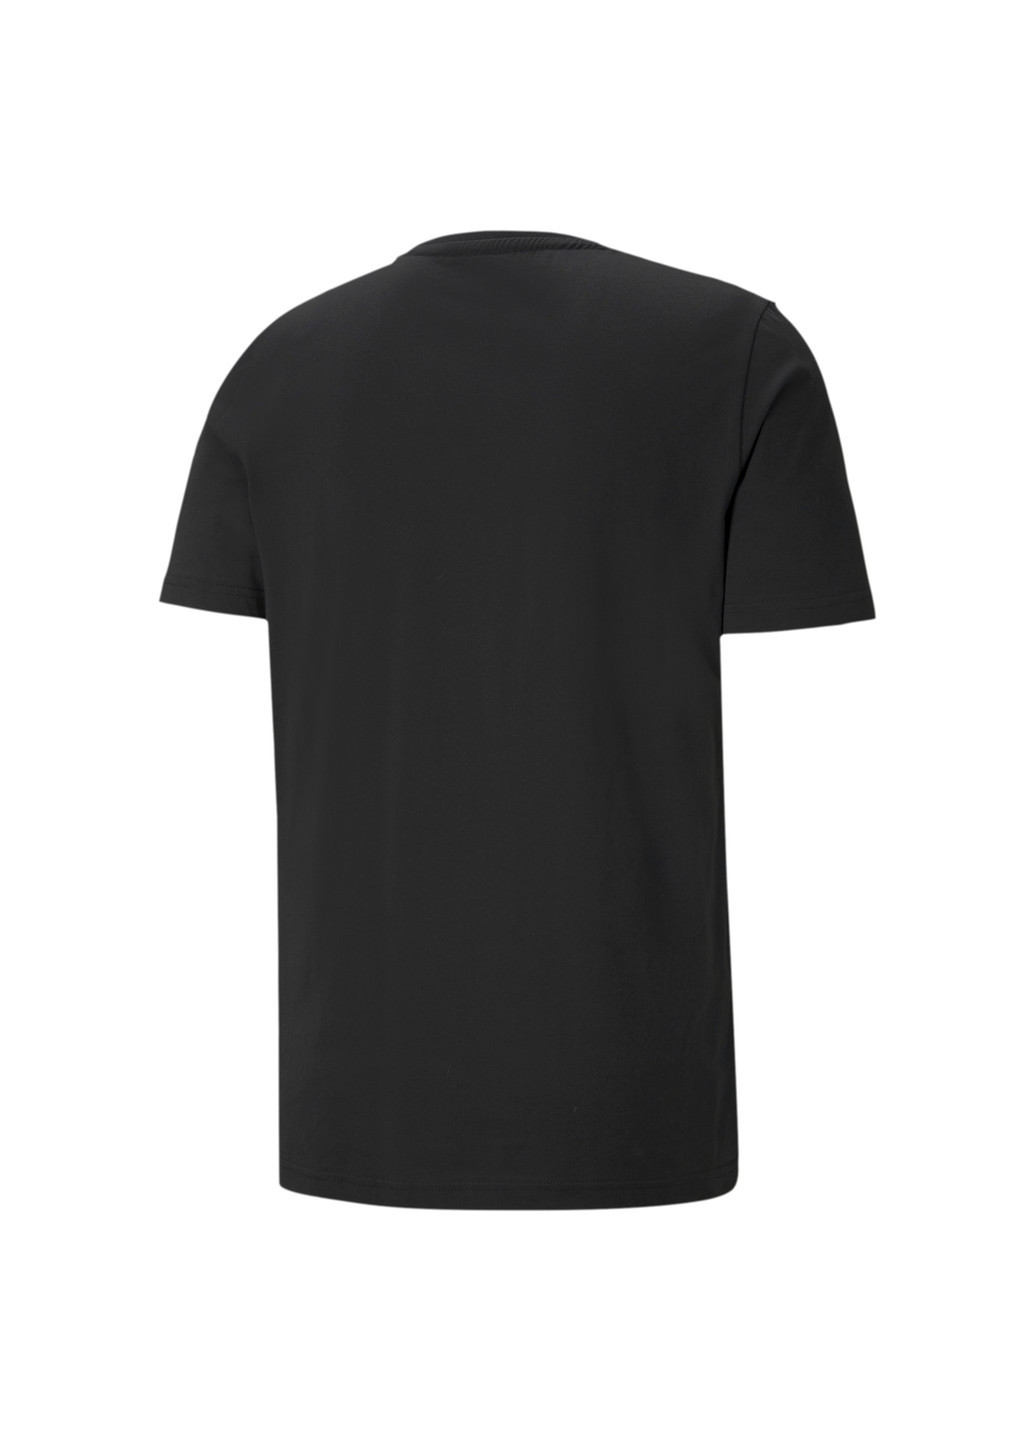 Черная футболка mercedes f1 logo men's tee Puma